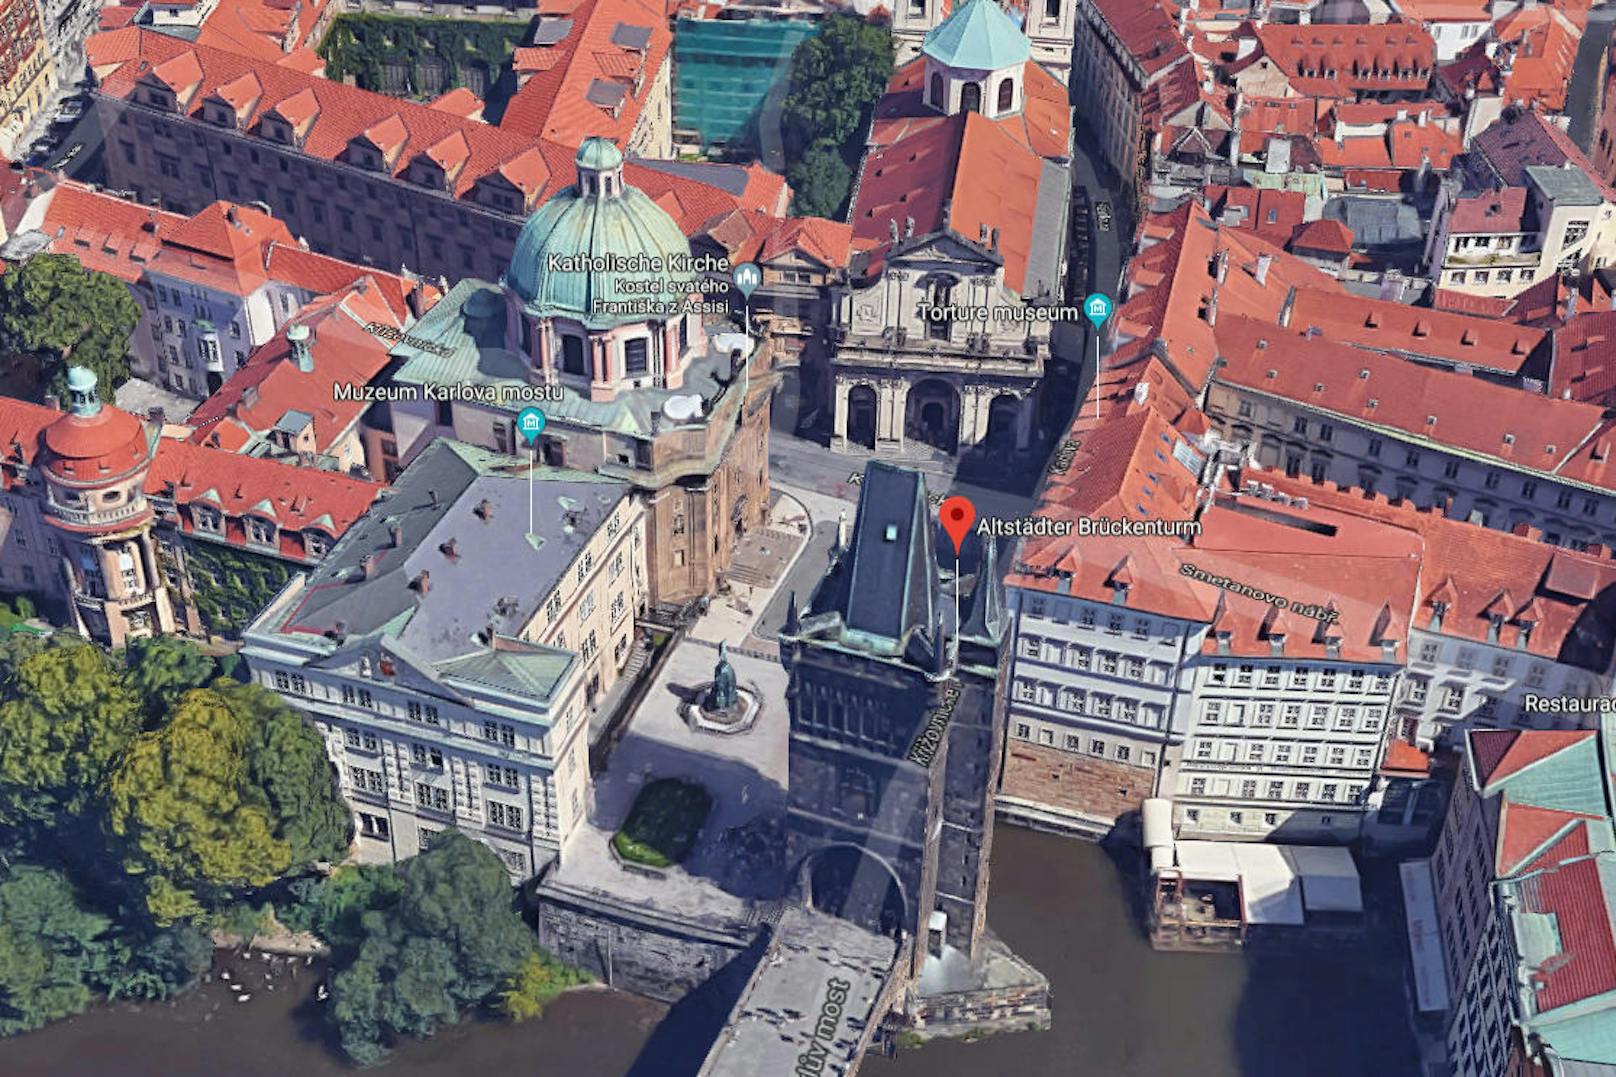 ... tatsächlich handelt es sich um Prag. Genauer um den Platz vor der Kreuzherrenkirche direkt an der berühmten Karlsbrücke. Knapp daneben.